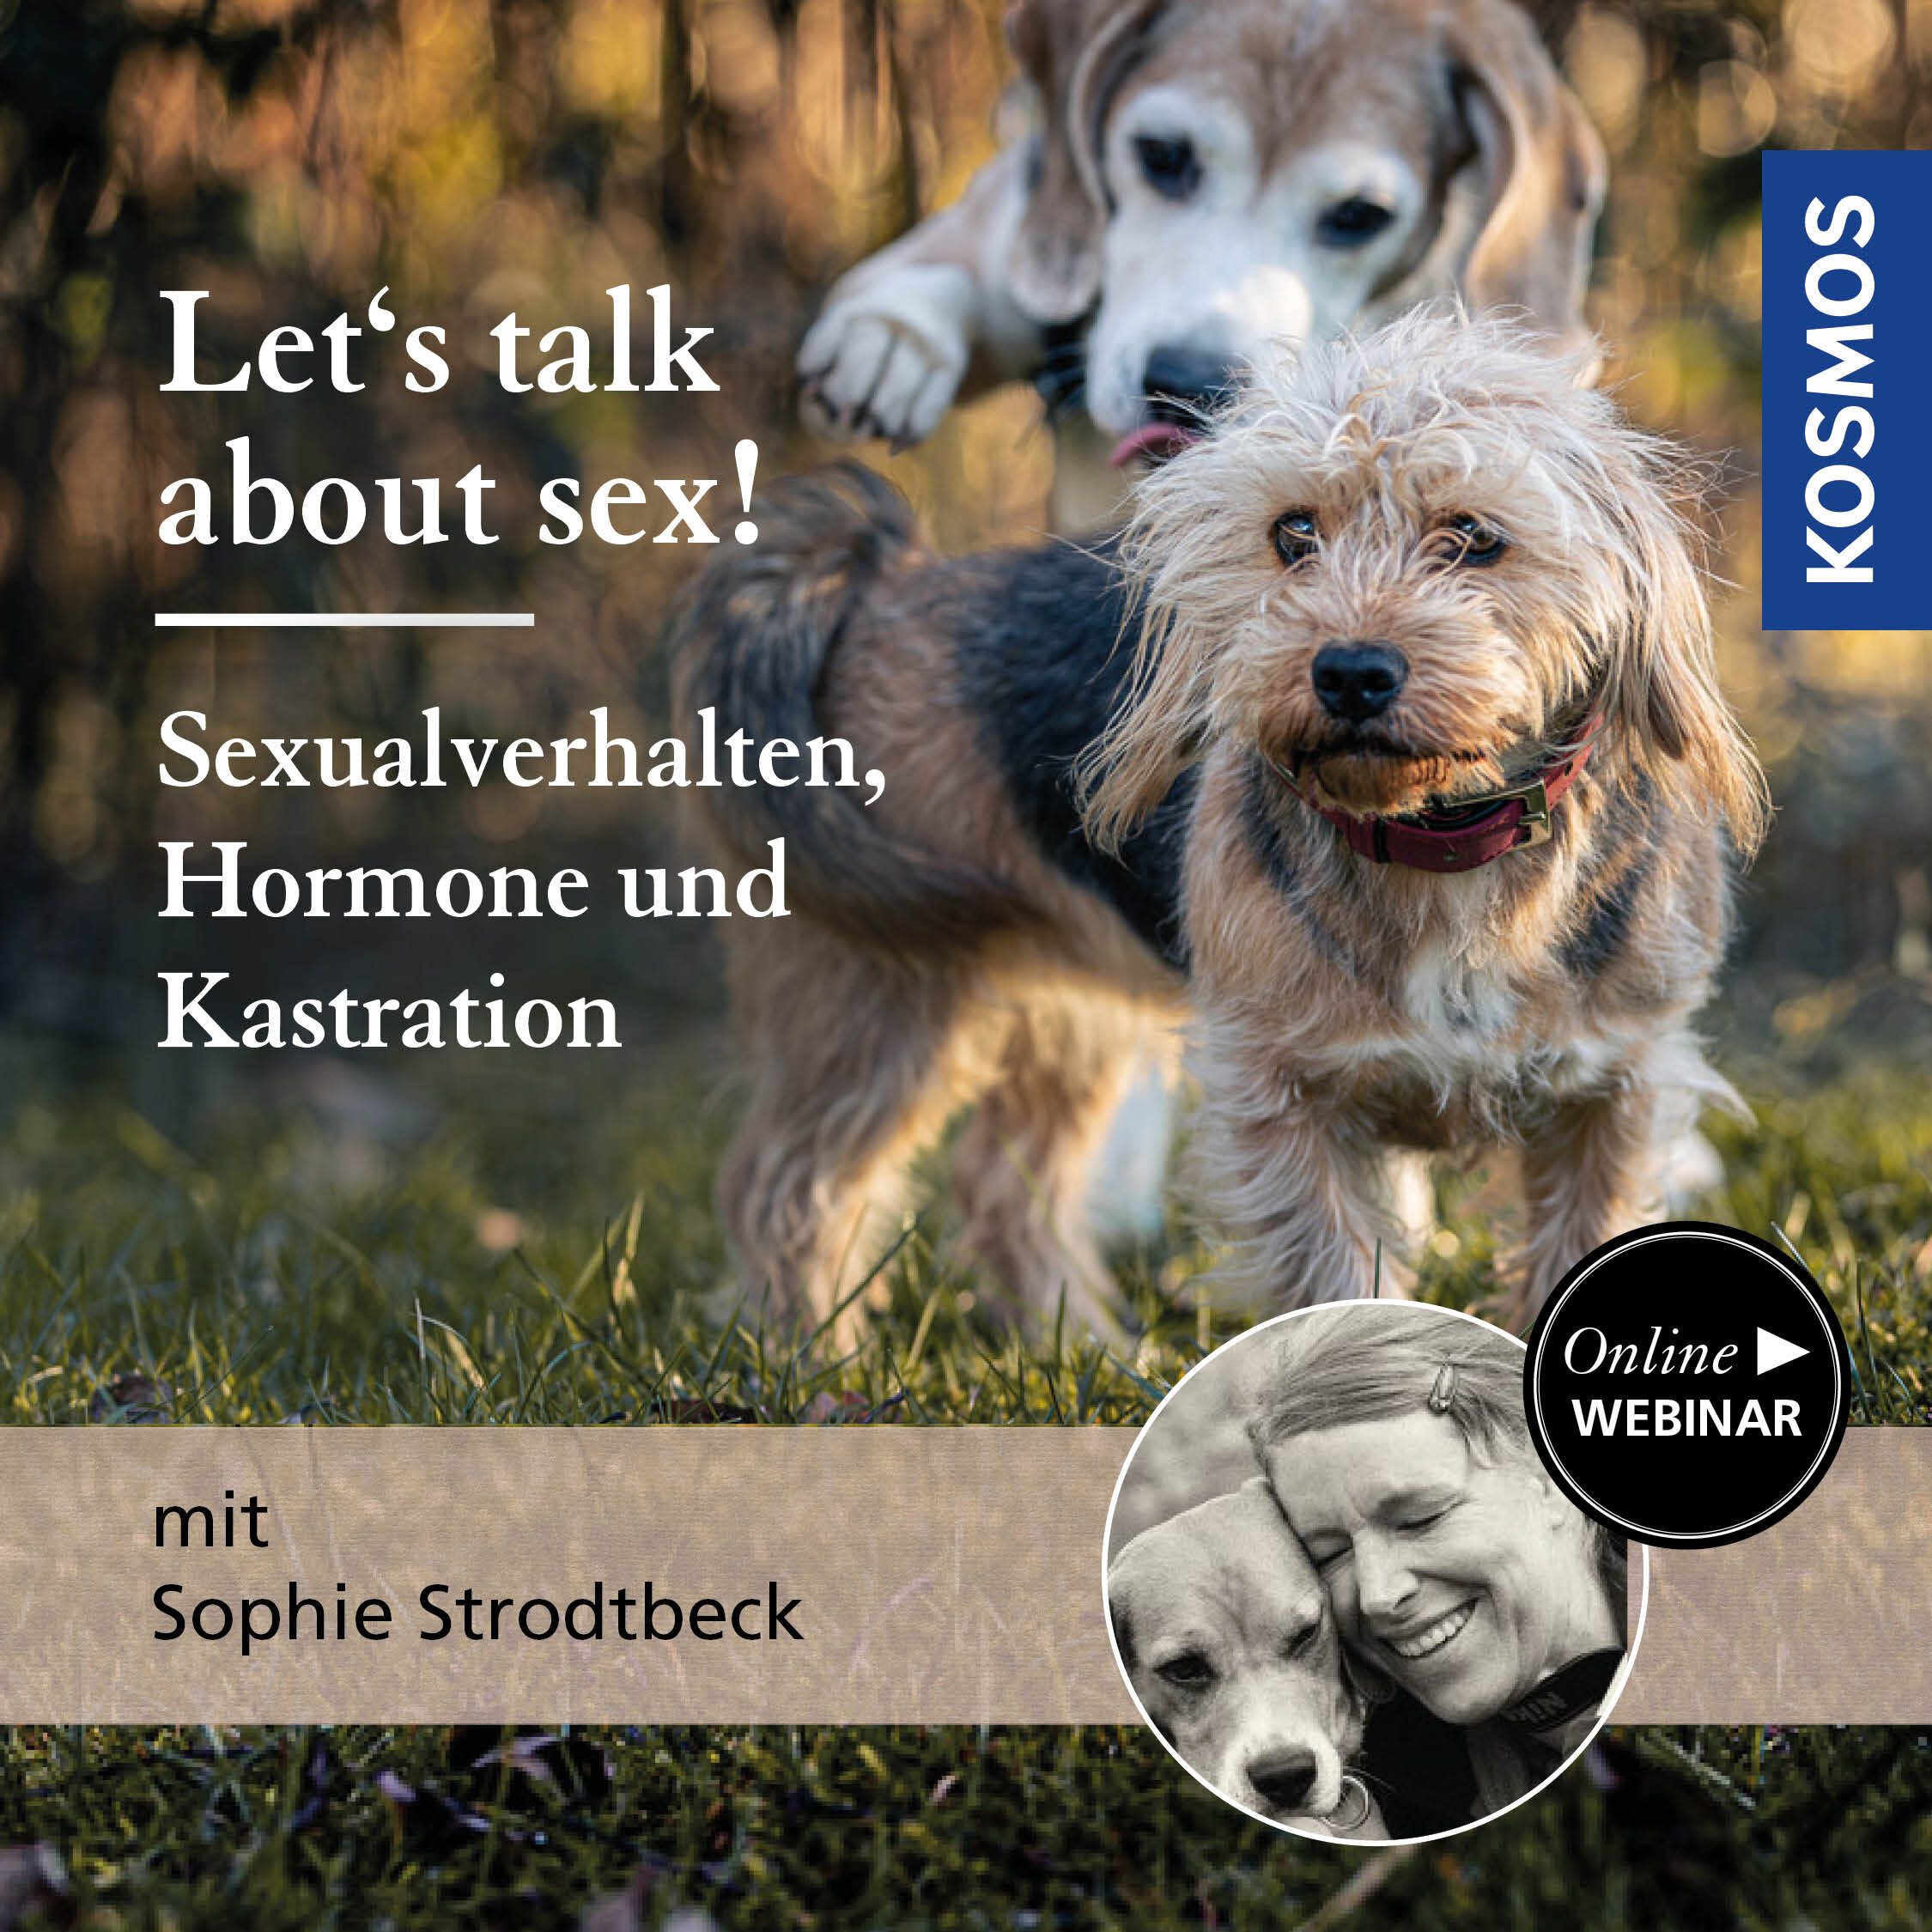 Let’s talk about sex! Sexualverhalten  Hormone und Kastration bei Hunden